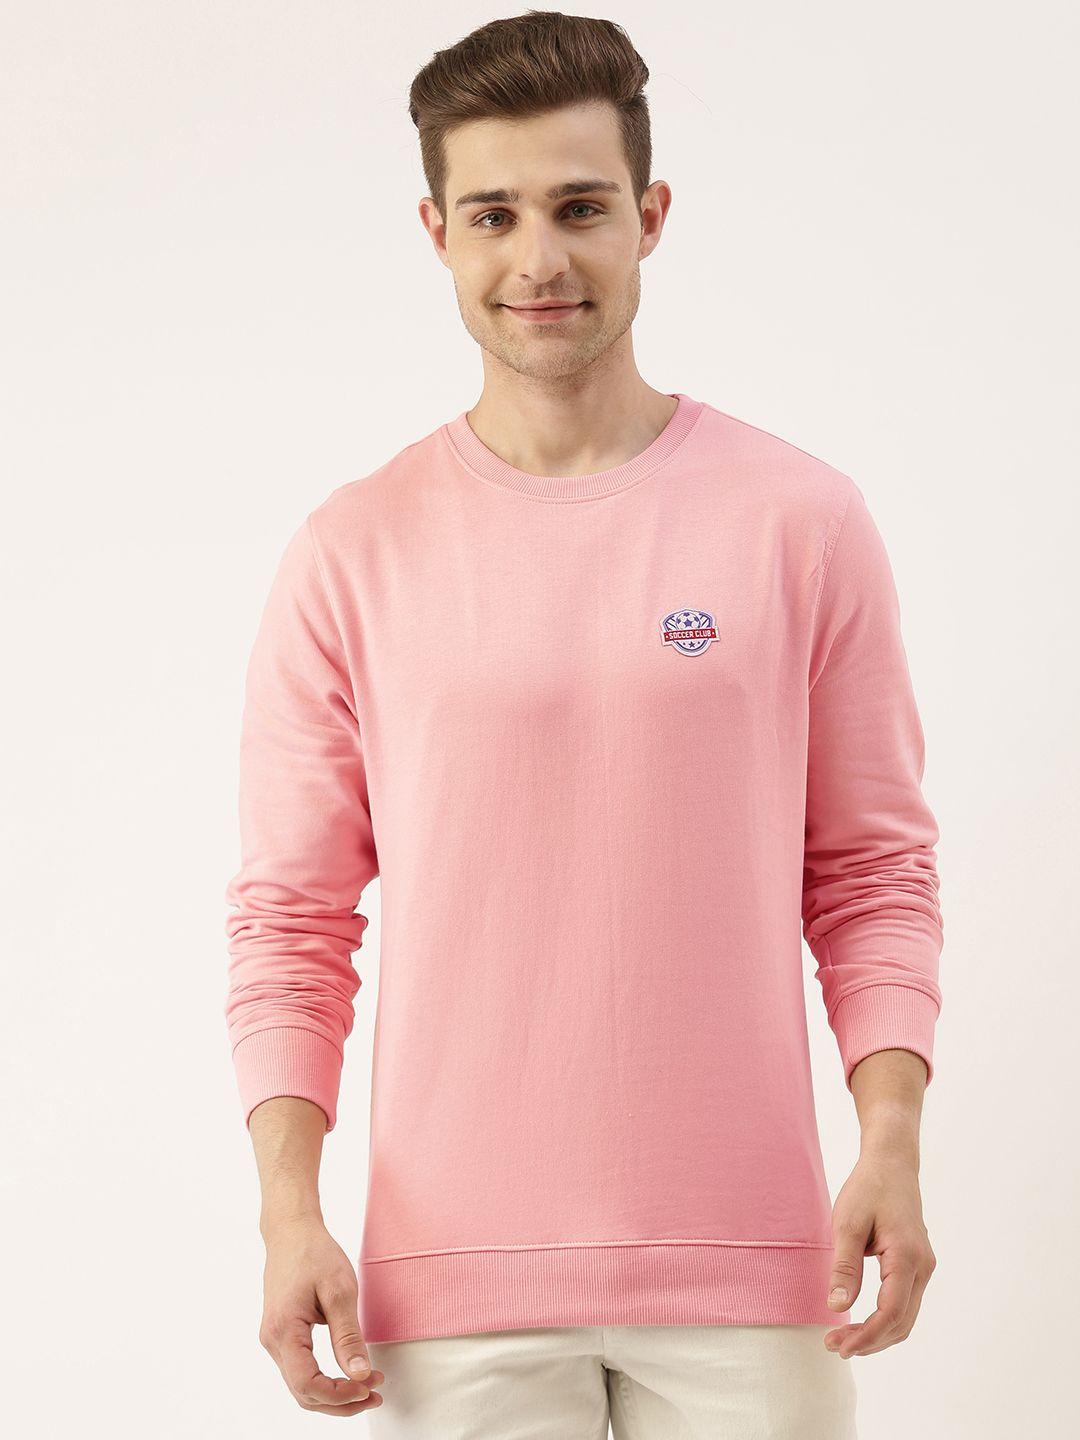 ivoc men pink sweatshirt